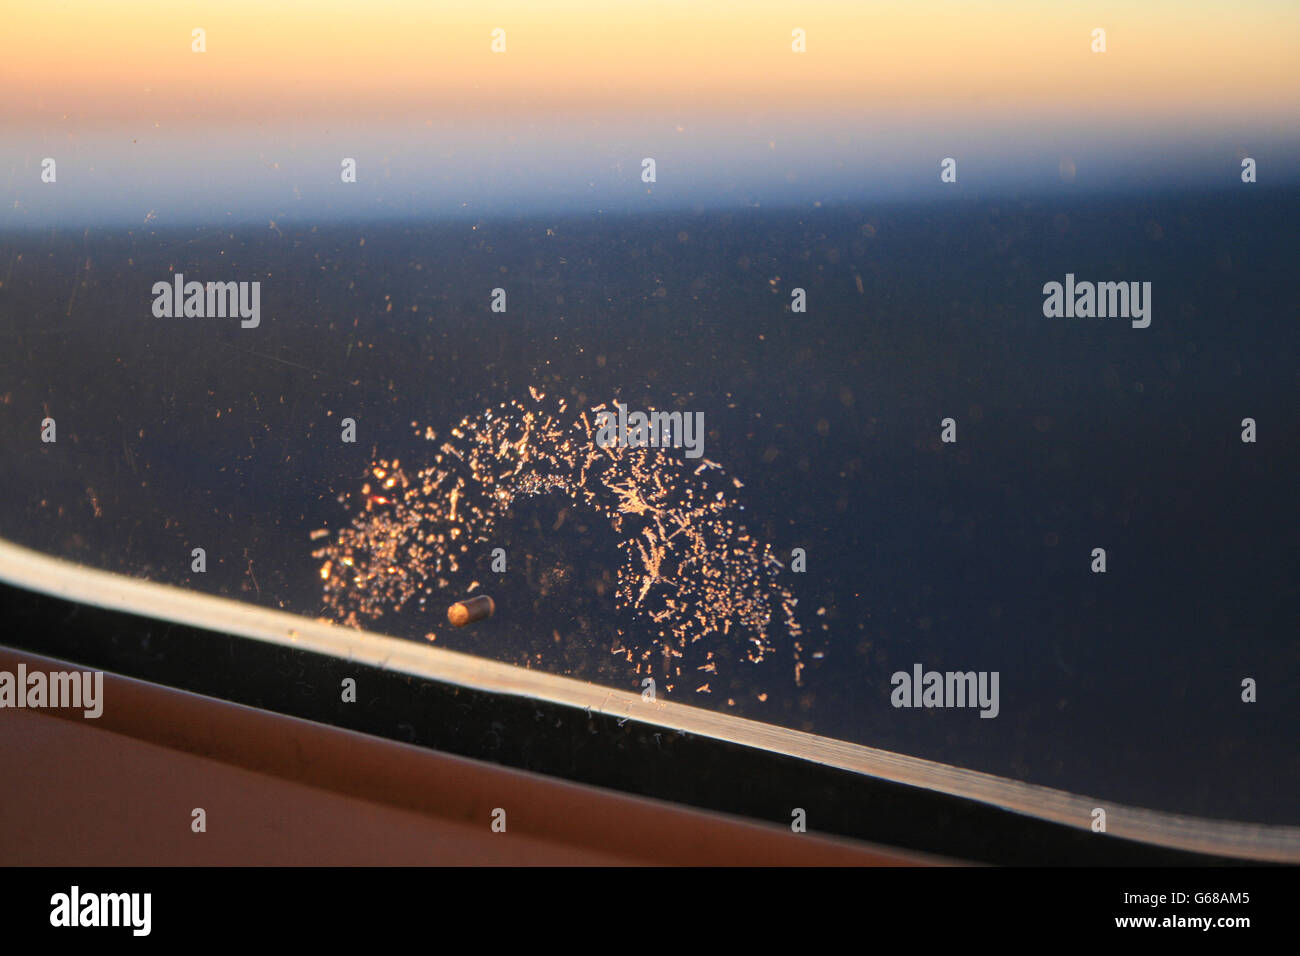 Un anneau de cristaux de glace se forment autour d'un petit trou dans la fenêtre d'un avion, avec un lever de soleil en arrière-plan. Banque D'Images